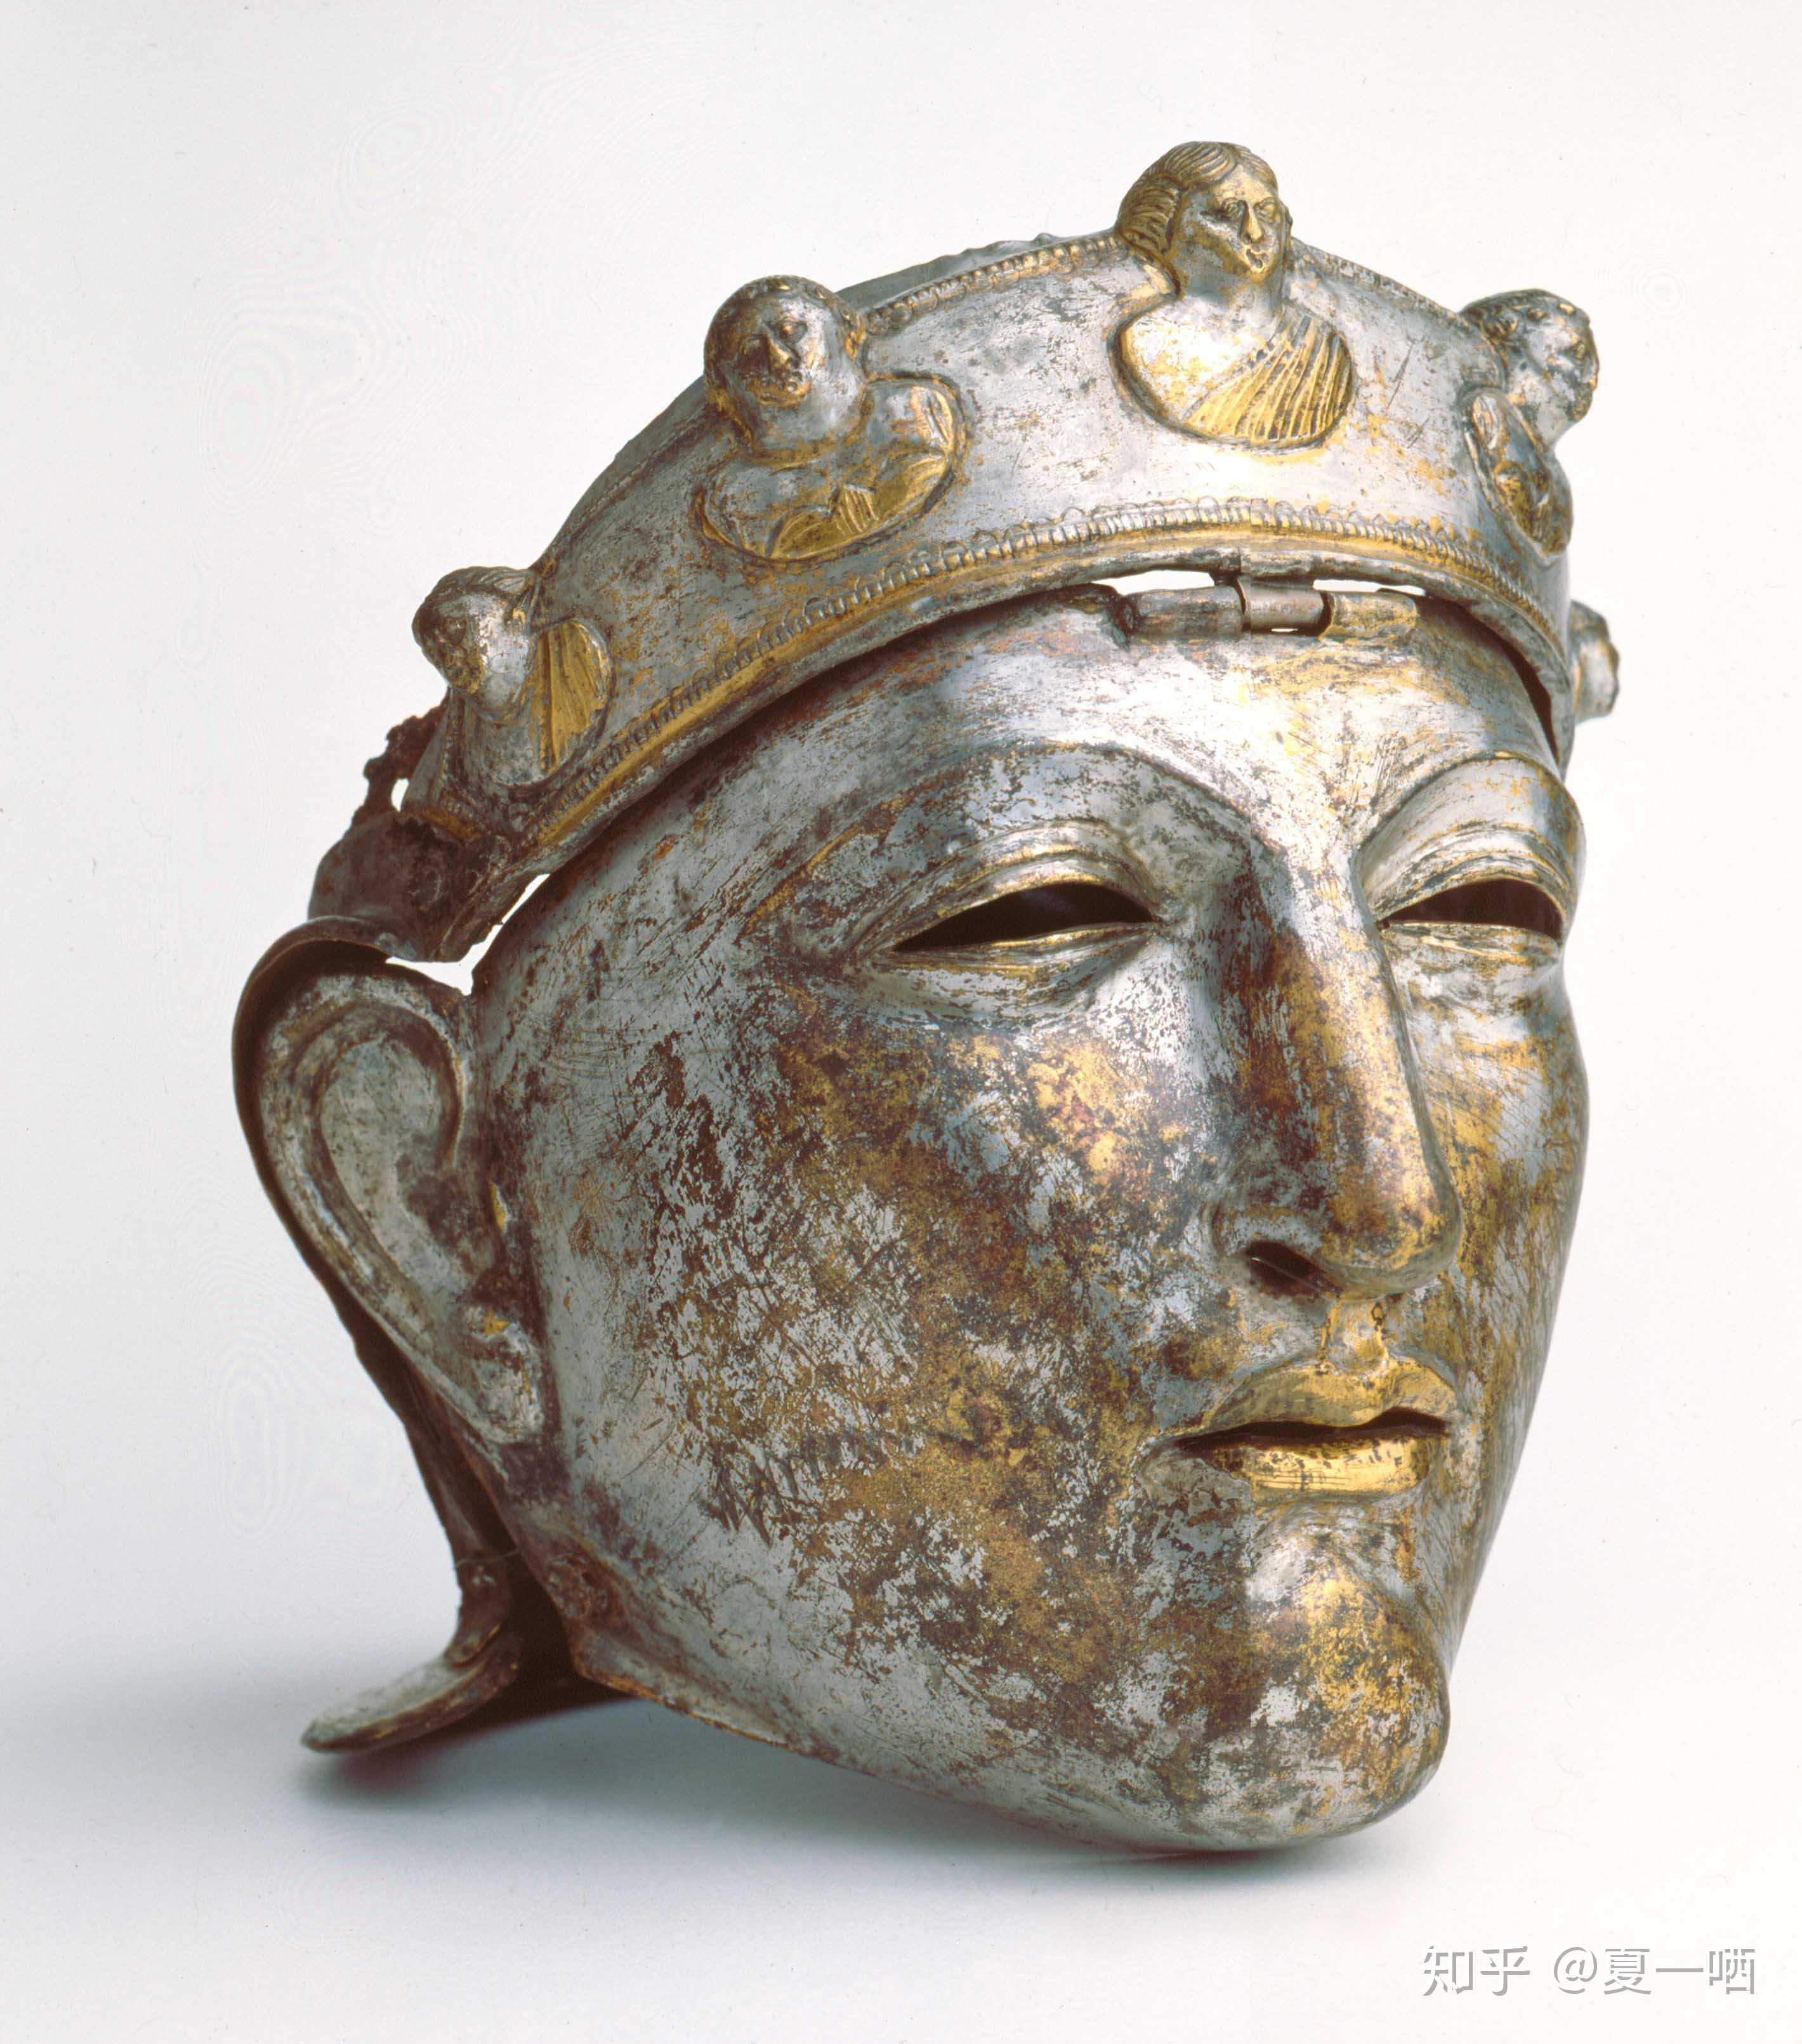 夏一哂 的想法: 古罗马一世纪精锐骑兵所使用的面具,可能… 